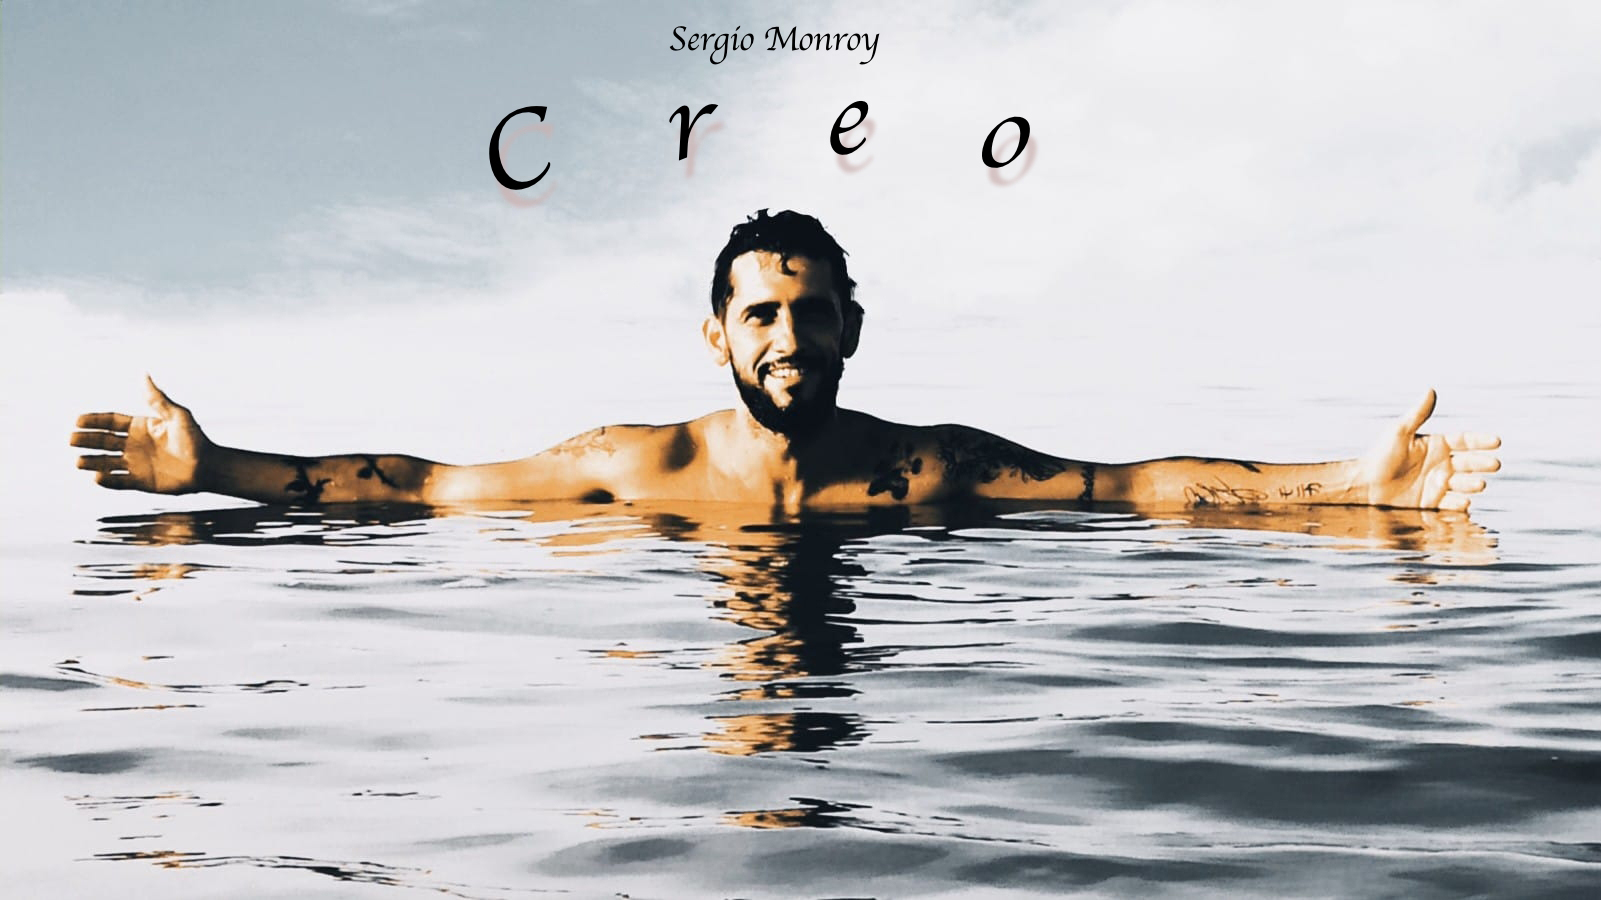 Sergio monroy presenta "creo"